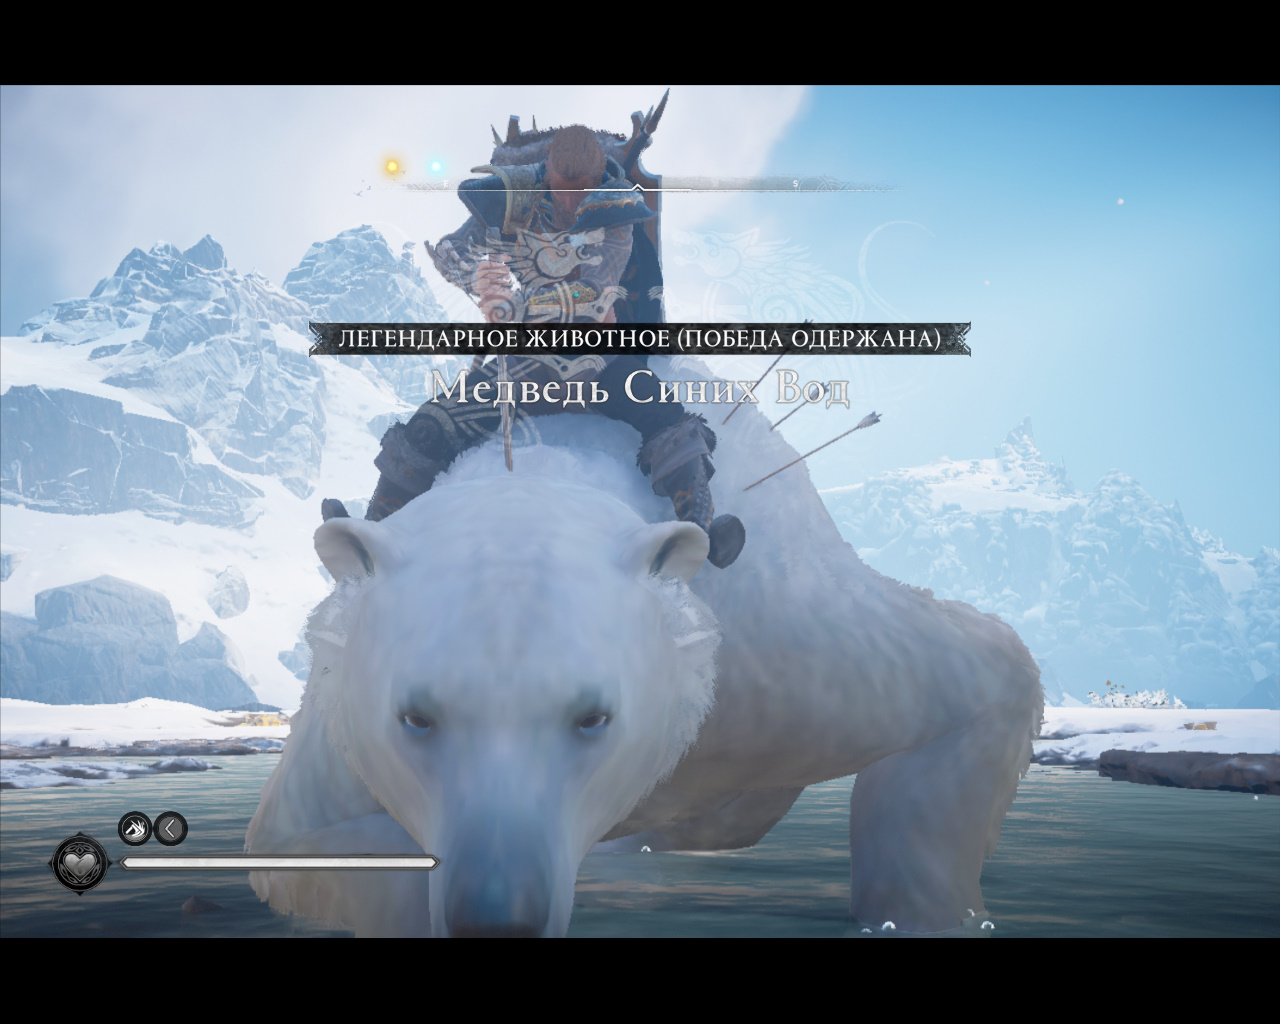 Assassin's Creed Valhalla Прохождение 415 Медведь Синих Вод. Хордафюльке.